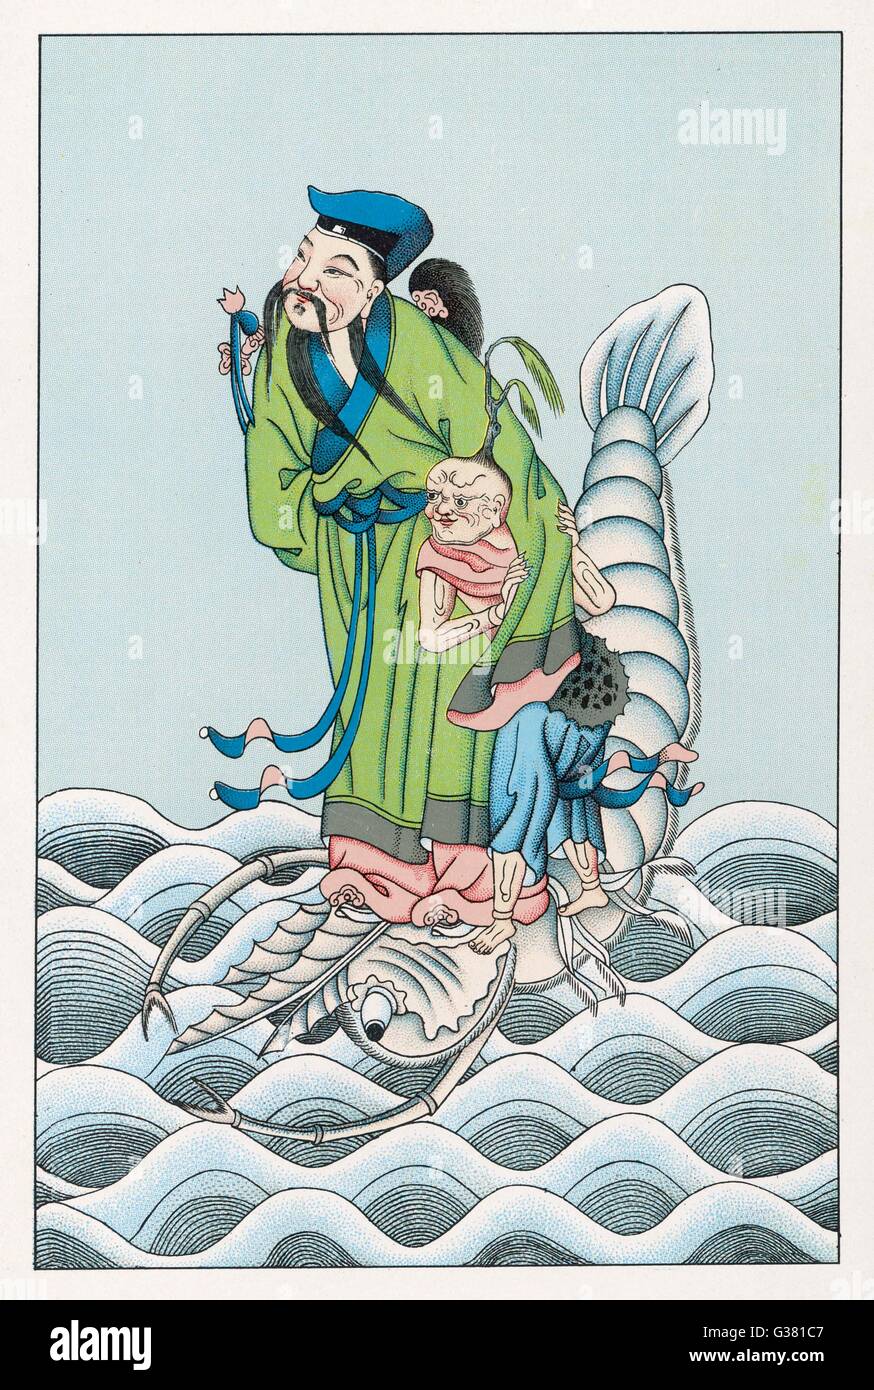 LIU TONG-PIN, uno de los Ocho Inmortales del panteón chino, representado cabalgando sobre un kraken (que se ve muy similar a un cangrejo gigante !) Fecha: 1915 Foto de stock